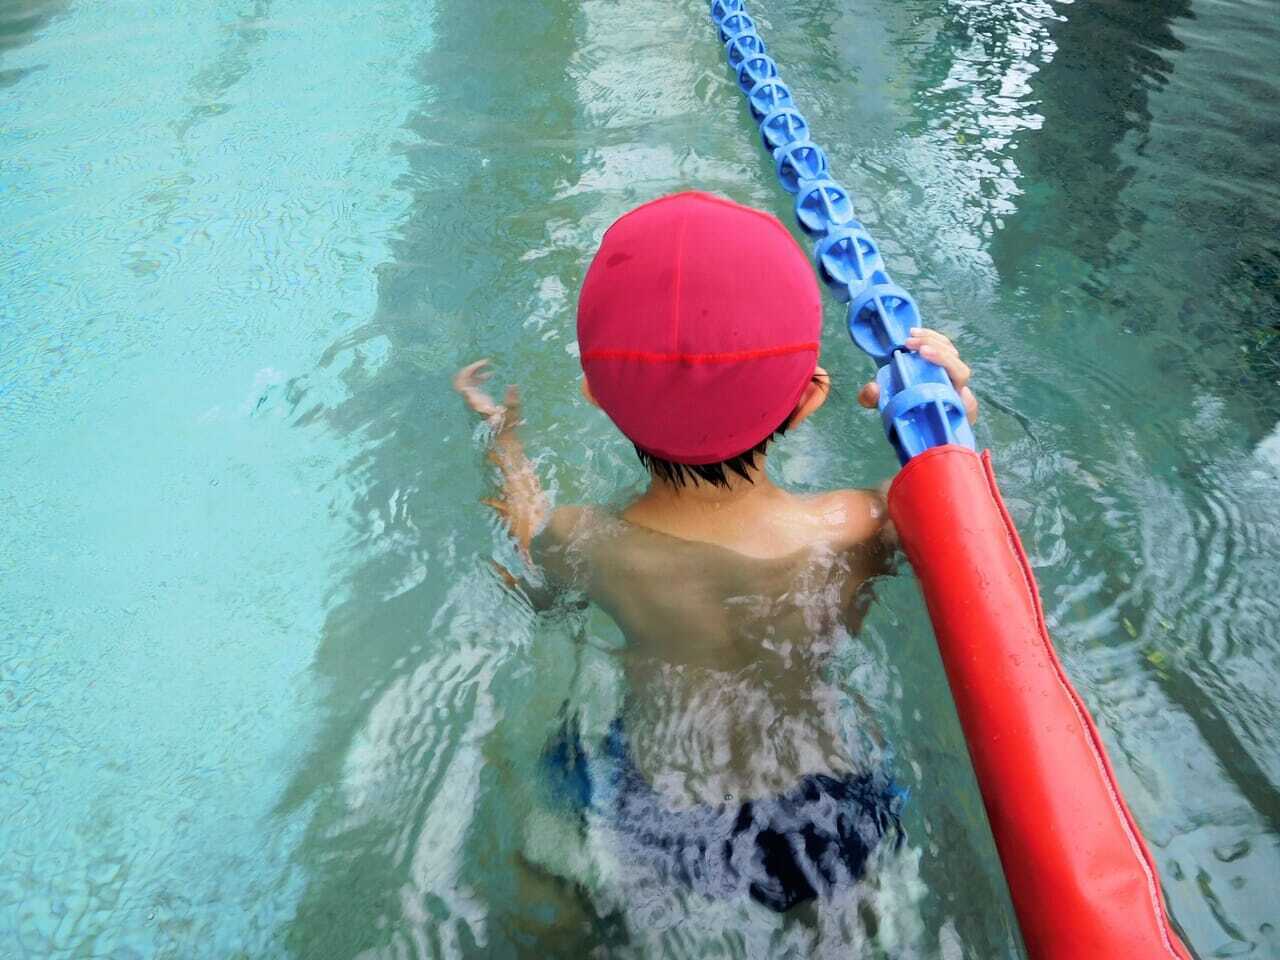 水泳帽をかぶって泳いでいる小学生の写真